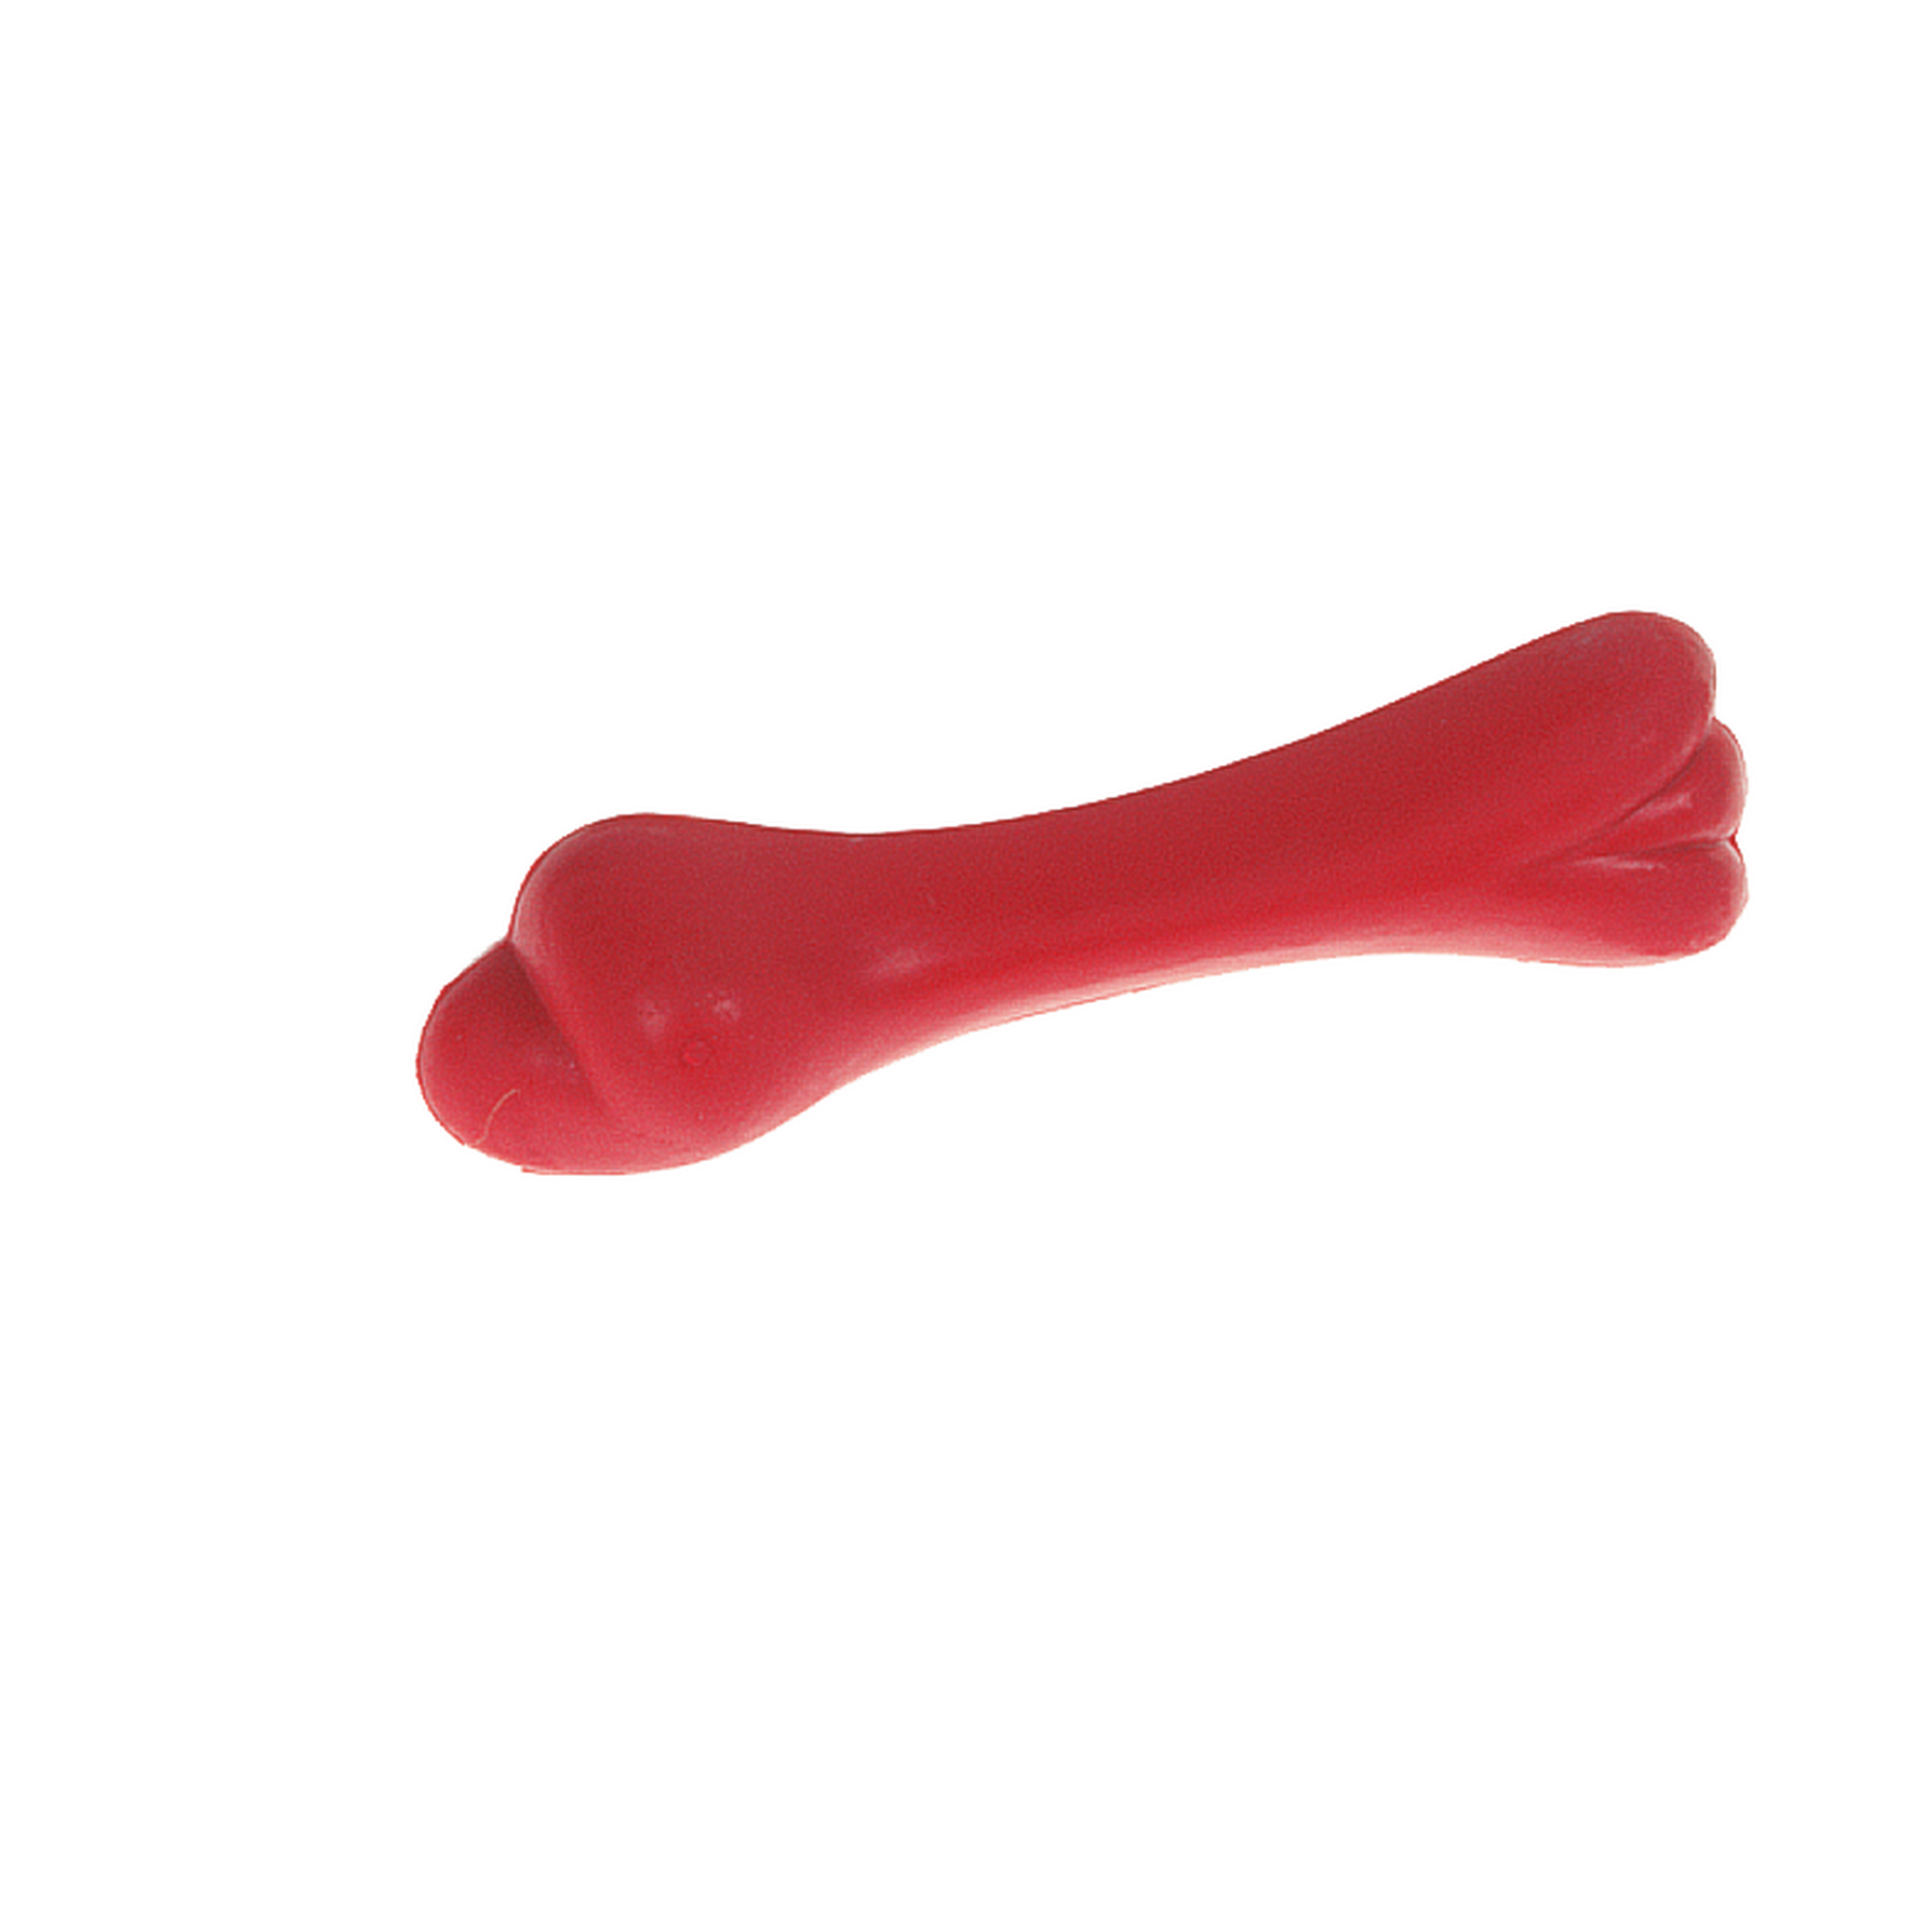 Spielzeugknochen Gummi 12 cm 6 Farben sortiert + product picture